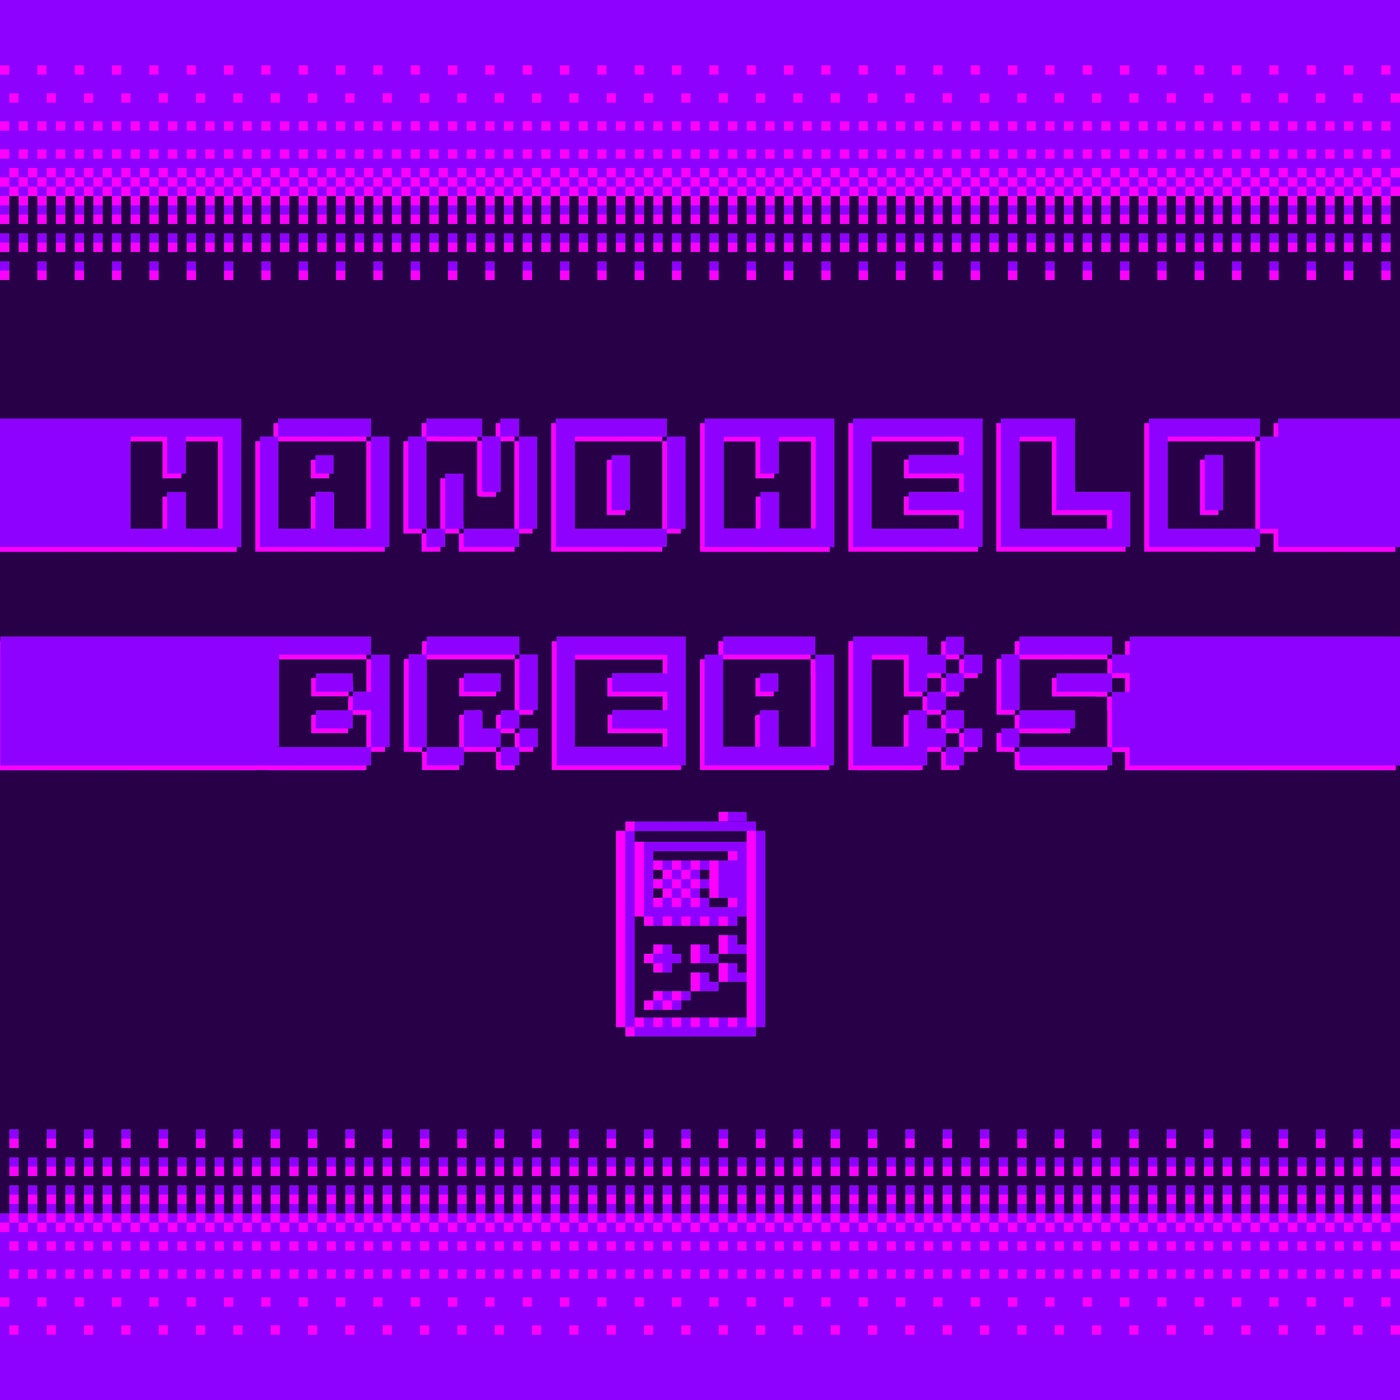 Handheld Breaks (HHB001)